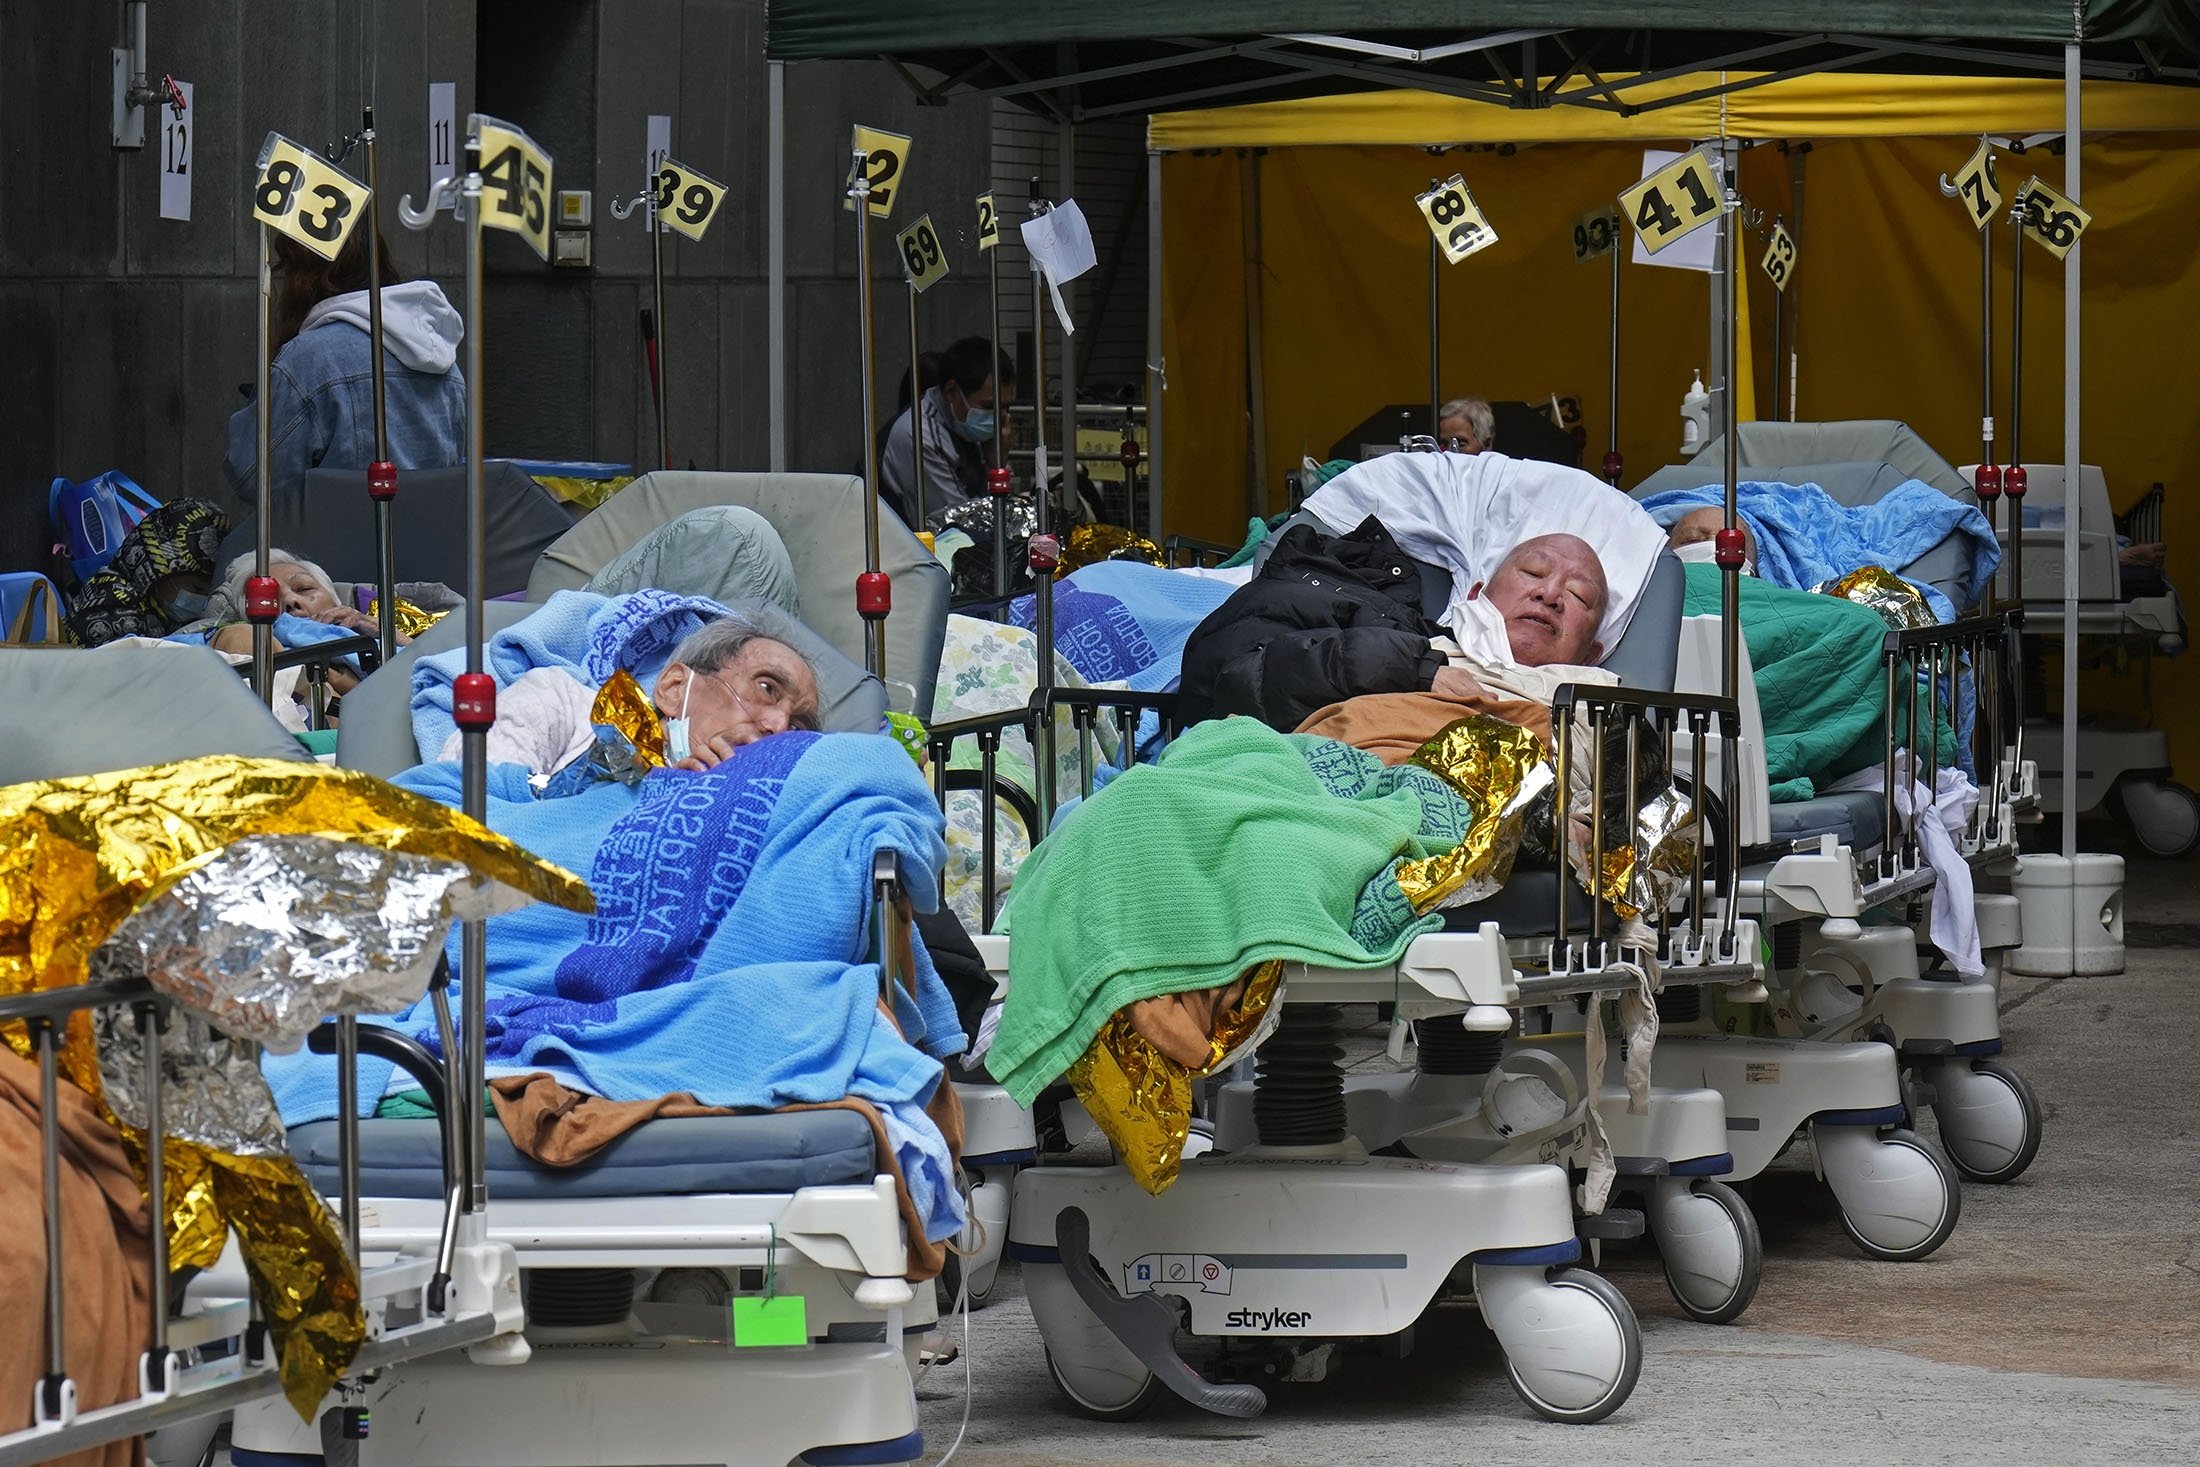 Pasien berbaring di ranjang rumah sakit menunggu di ruang tunggu sementara di luar Caritas Medical Center di Hong Kong, 16 Februari 2022. (AP Photo)